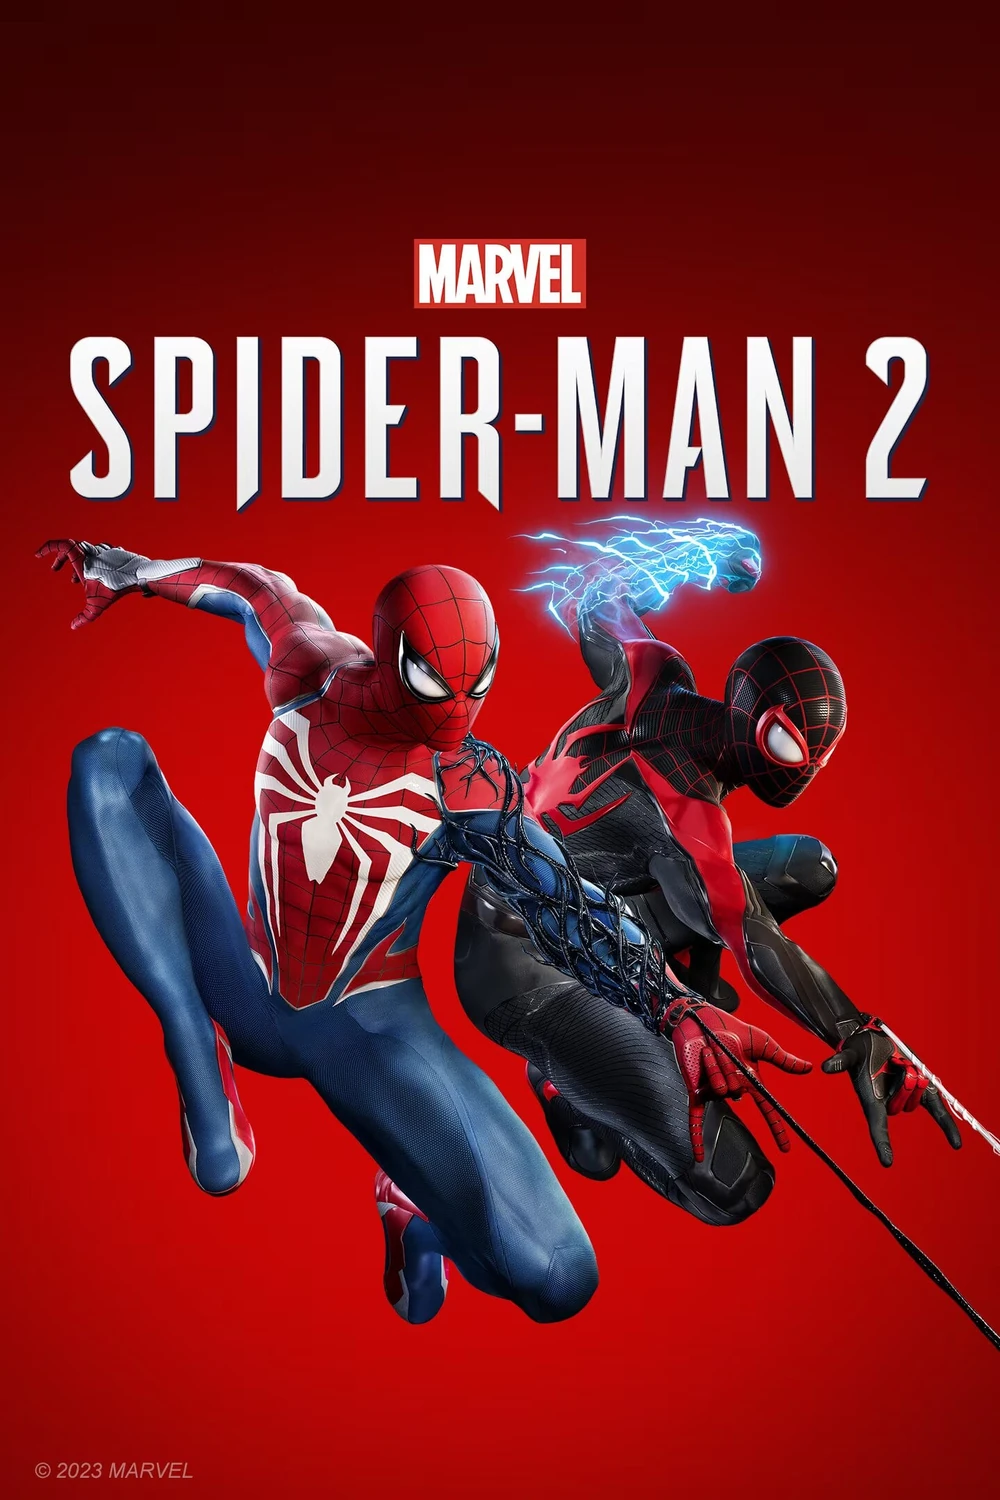 Marvel's Spider-Man - Edição Jogo do Ano - Ps5 Mídia Digital - Big Fase  Games